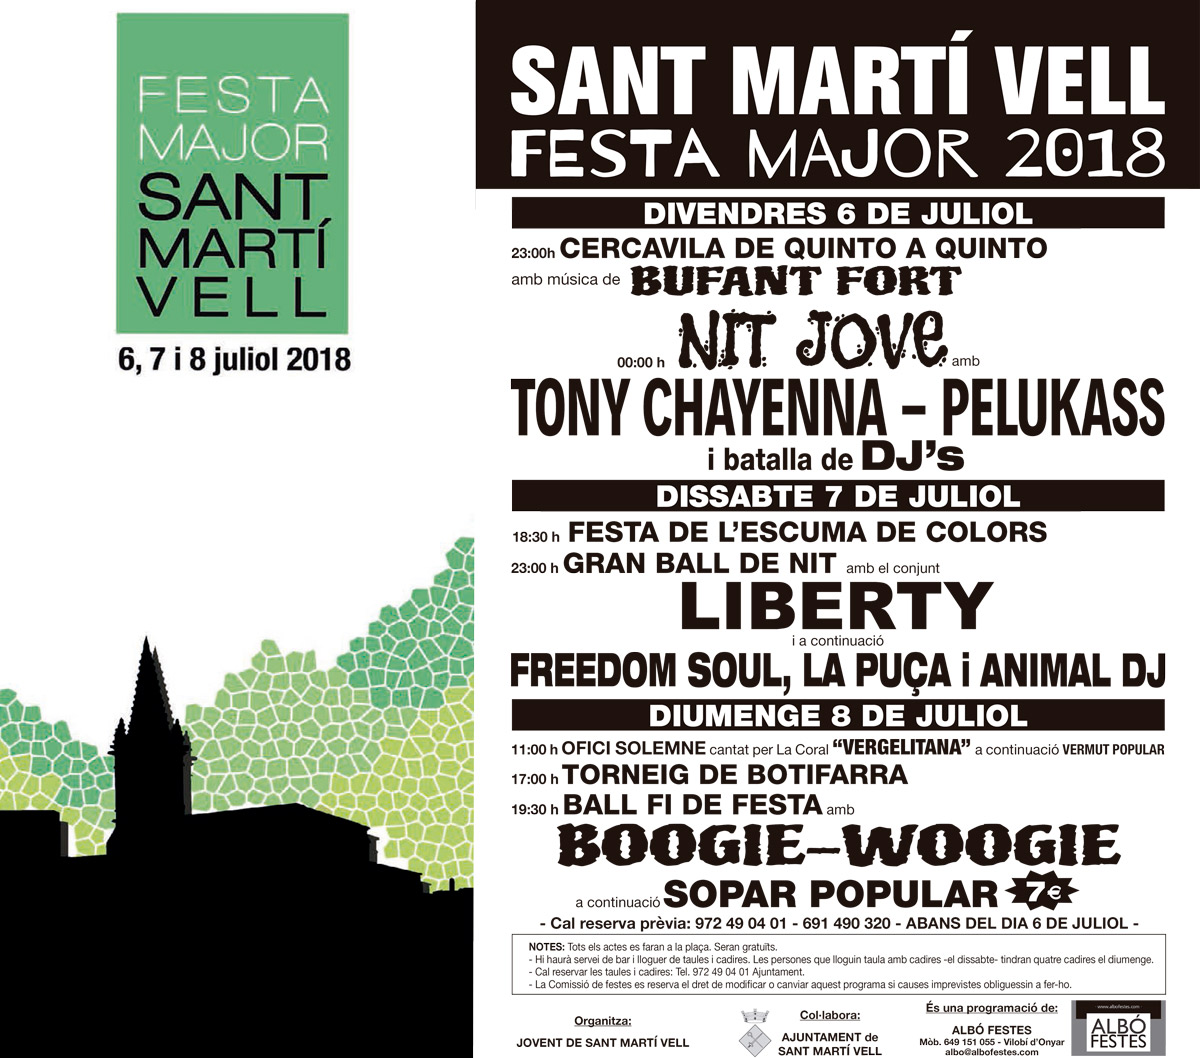 Festa-Major-2018-Sant-Marti-Vell